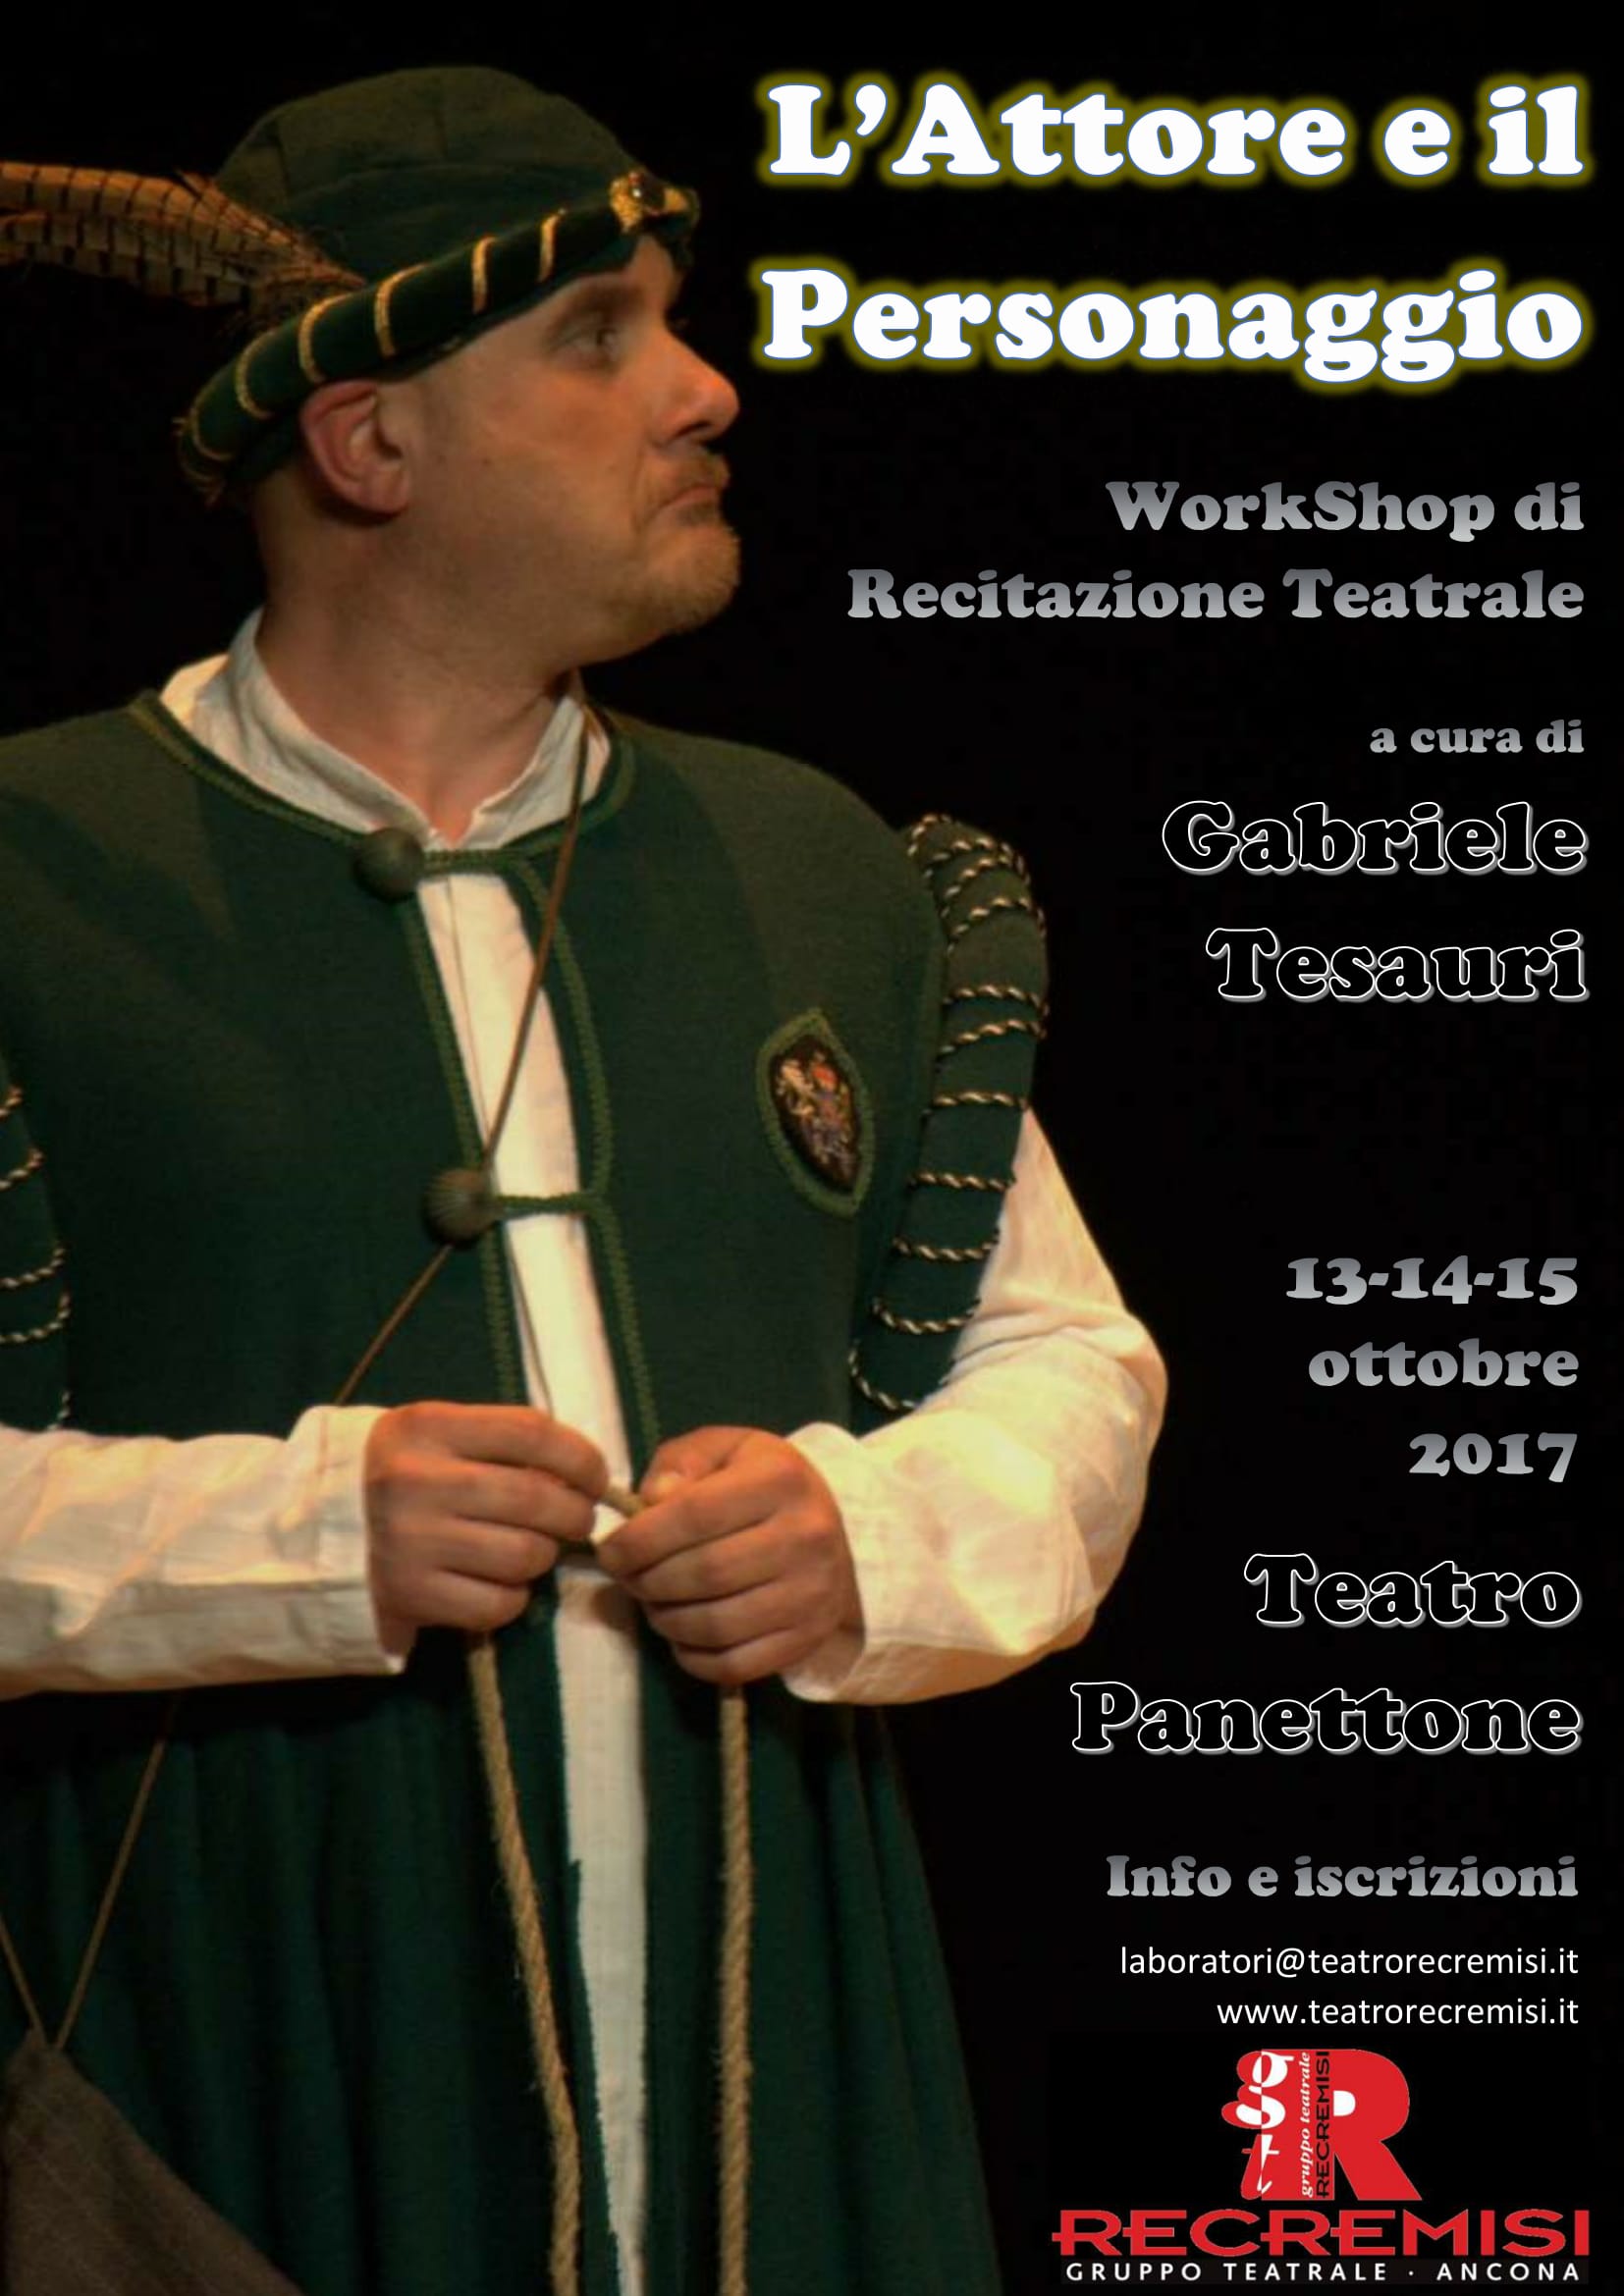 Workshop di recitazione teatrale con Gabriele Tesauri